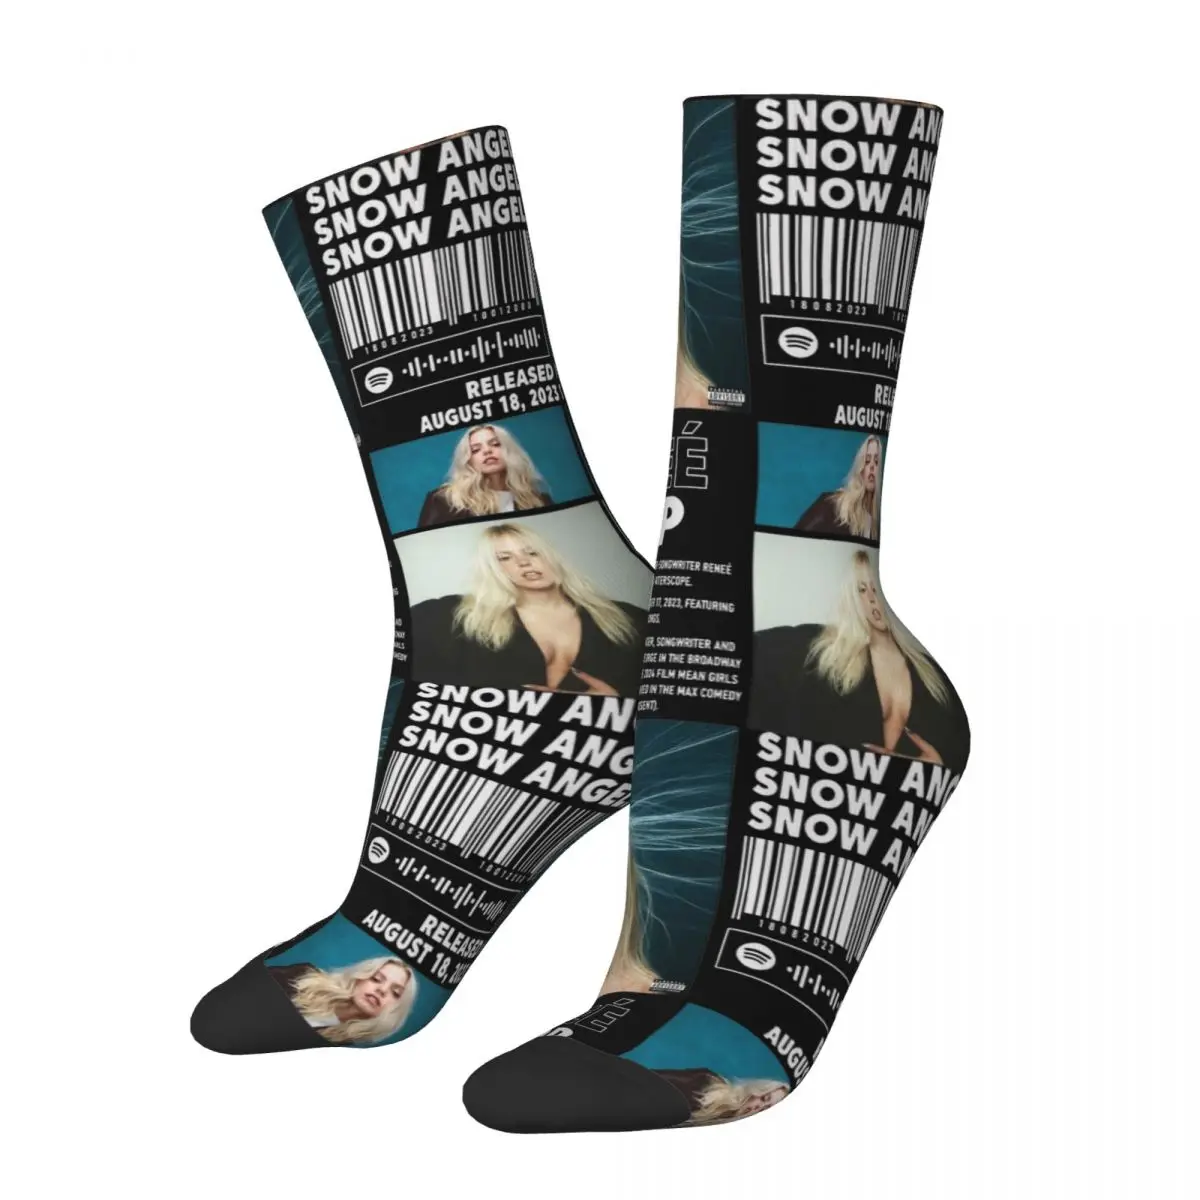 

Snow Angel Renee Rapp Album 90s Singer Outfits Men Women Socks Sweat Absorbing Skateboard Crew Socks Soft Little Small Gifts